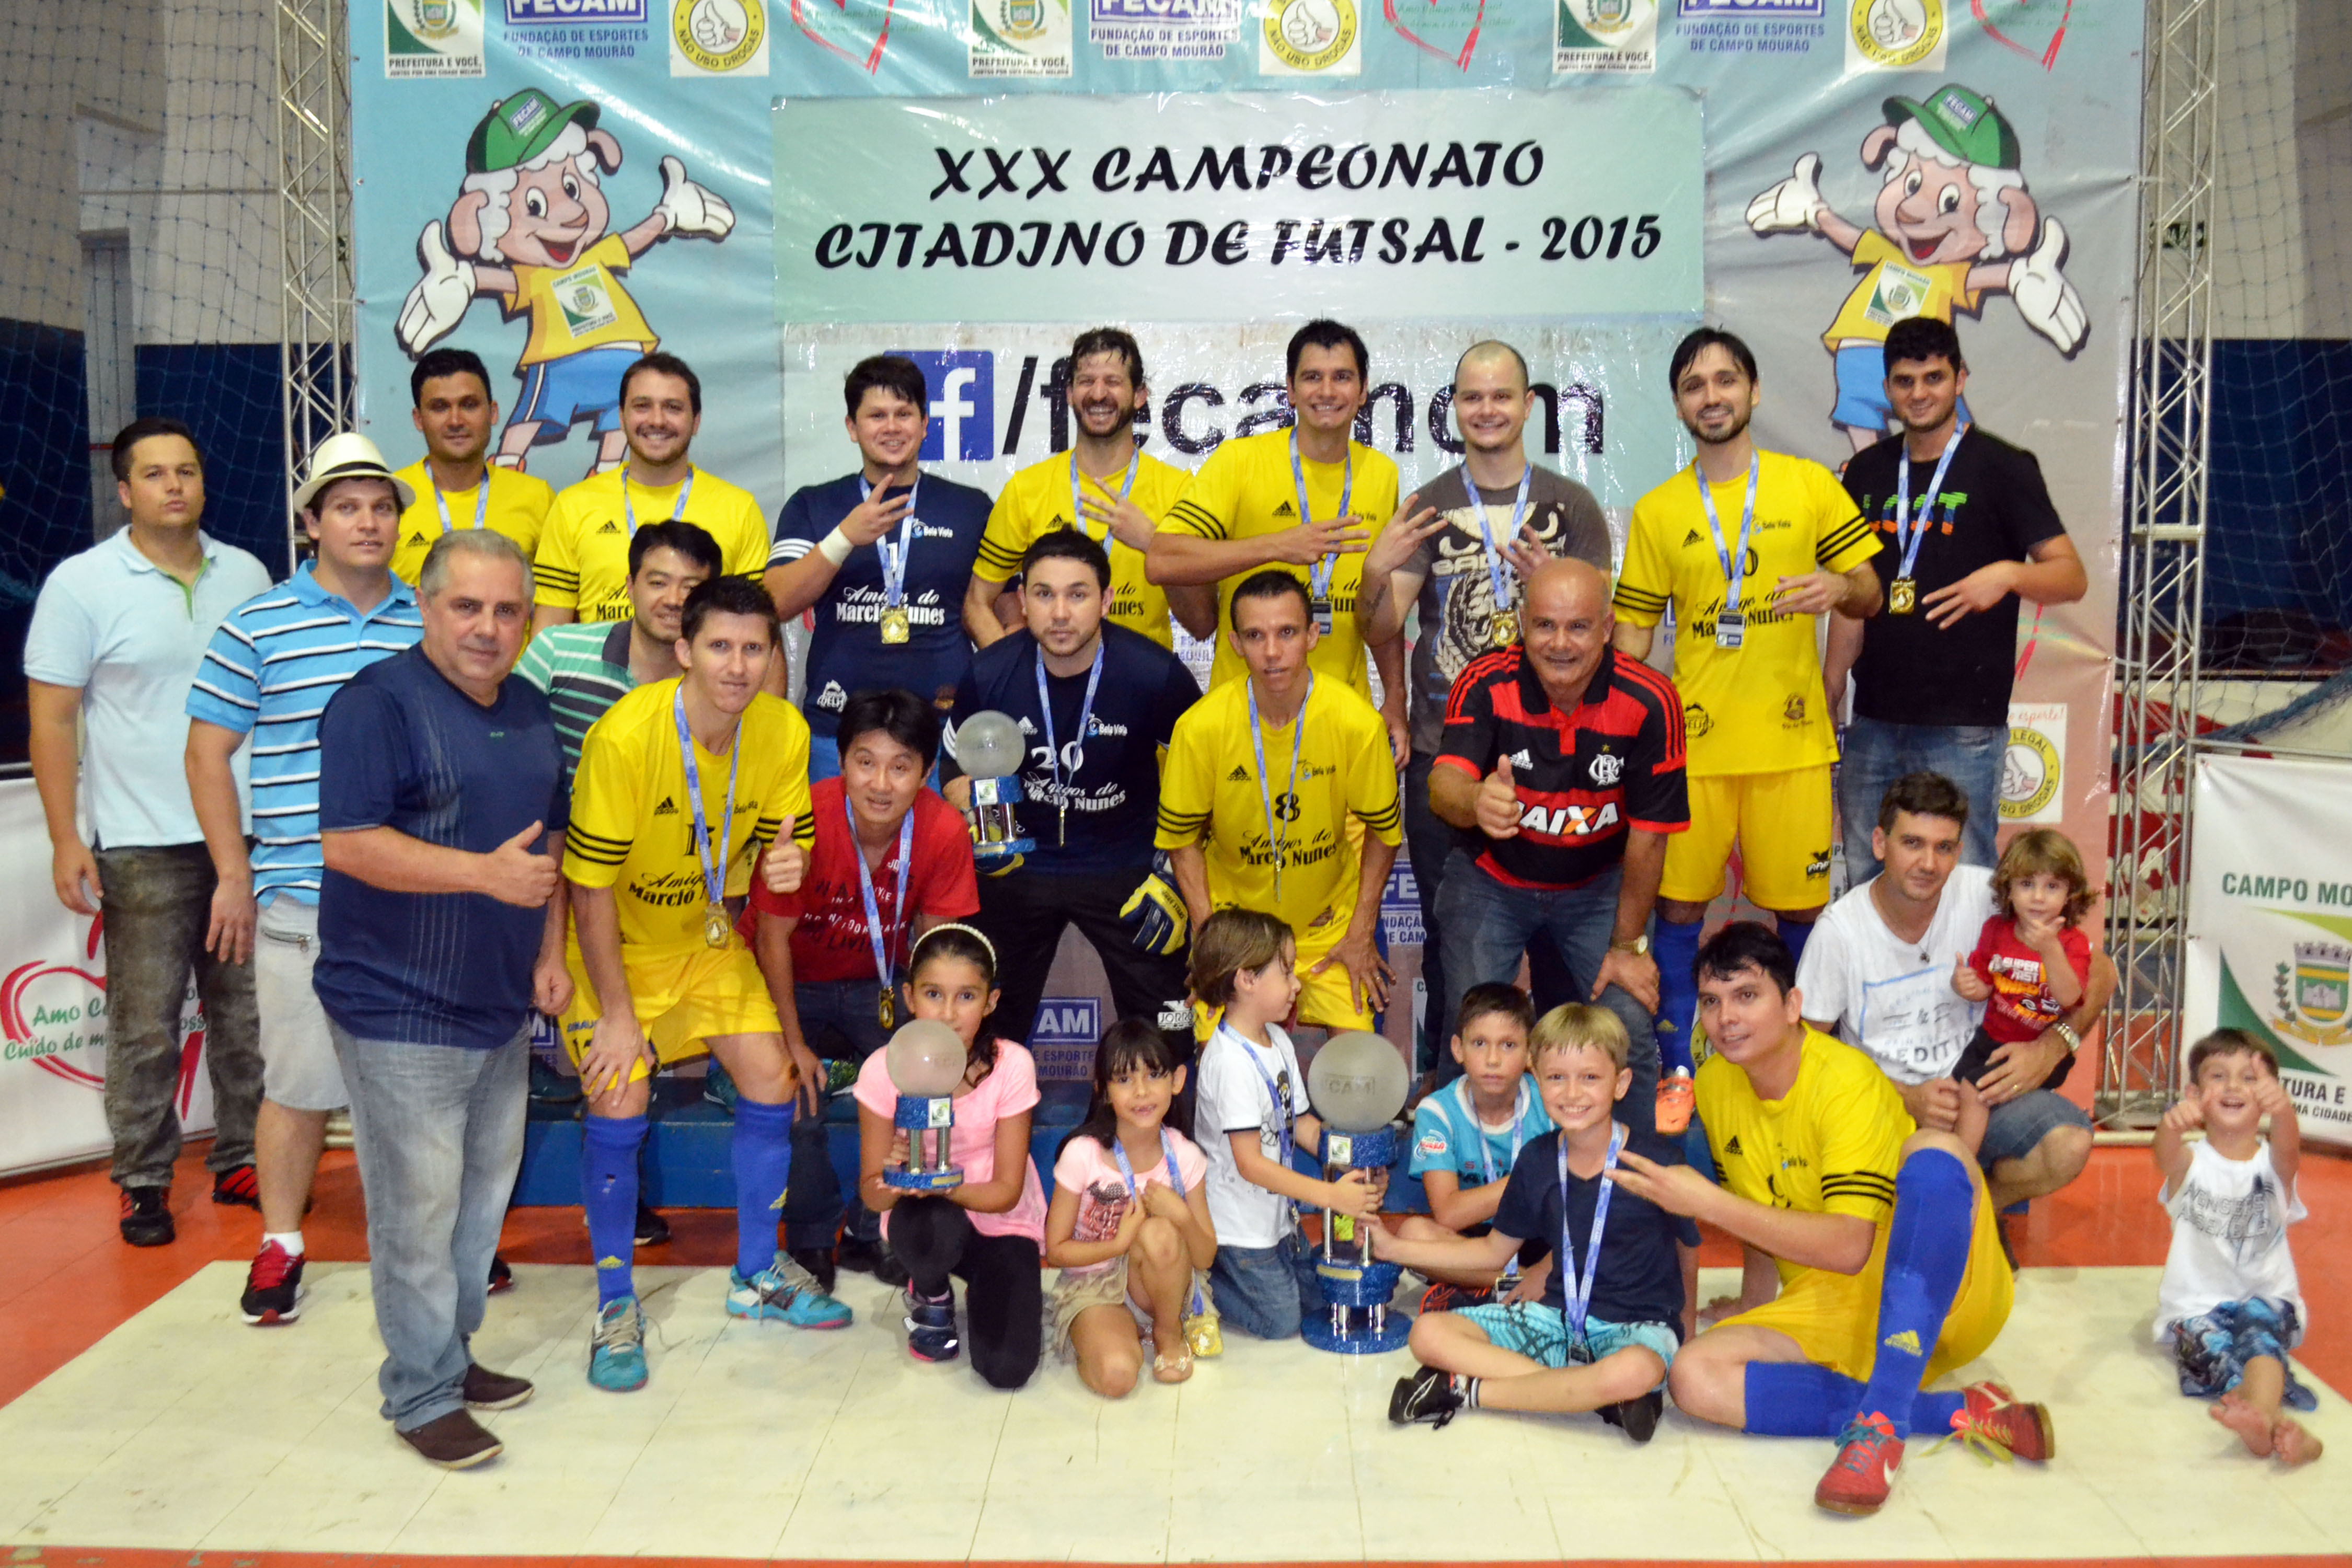 Mercado Dimauro - Campeão Citadino de Futsal